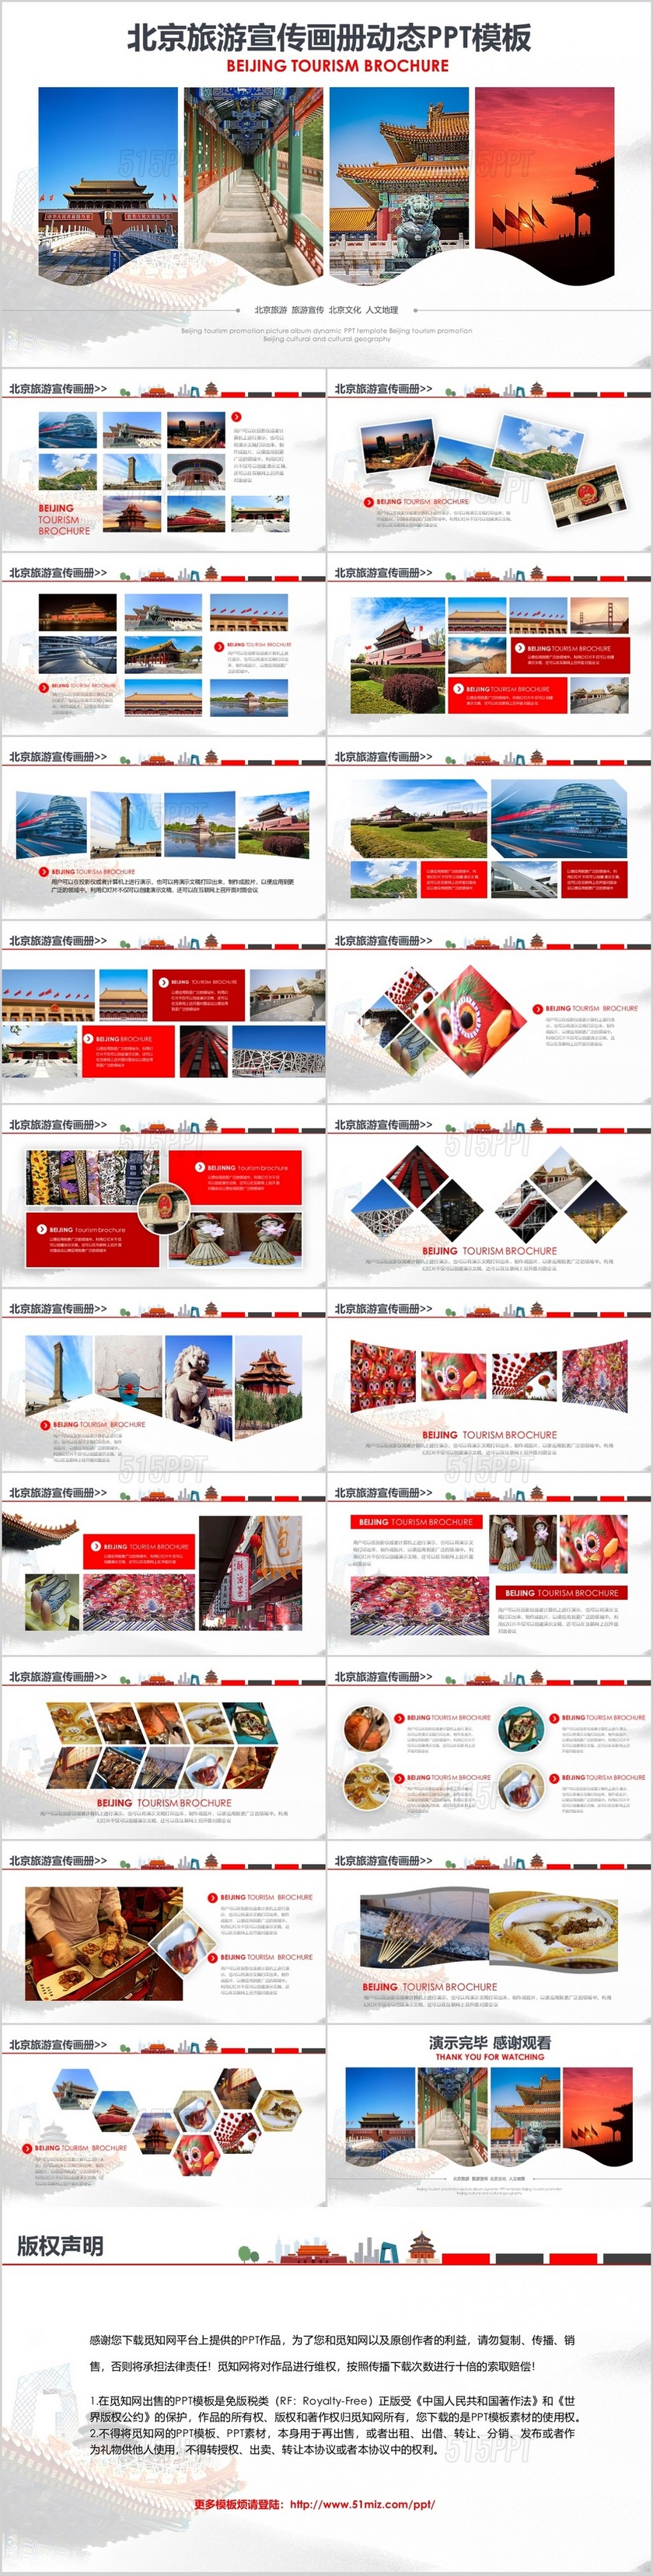 北京旅游宣传画册动态PPT模板印象北京旅游攻略风土人情